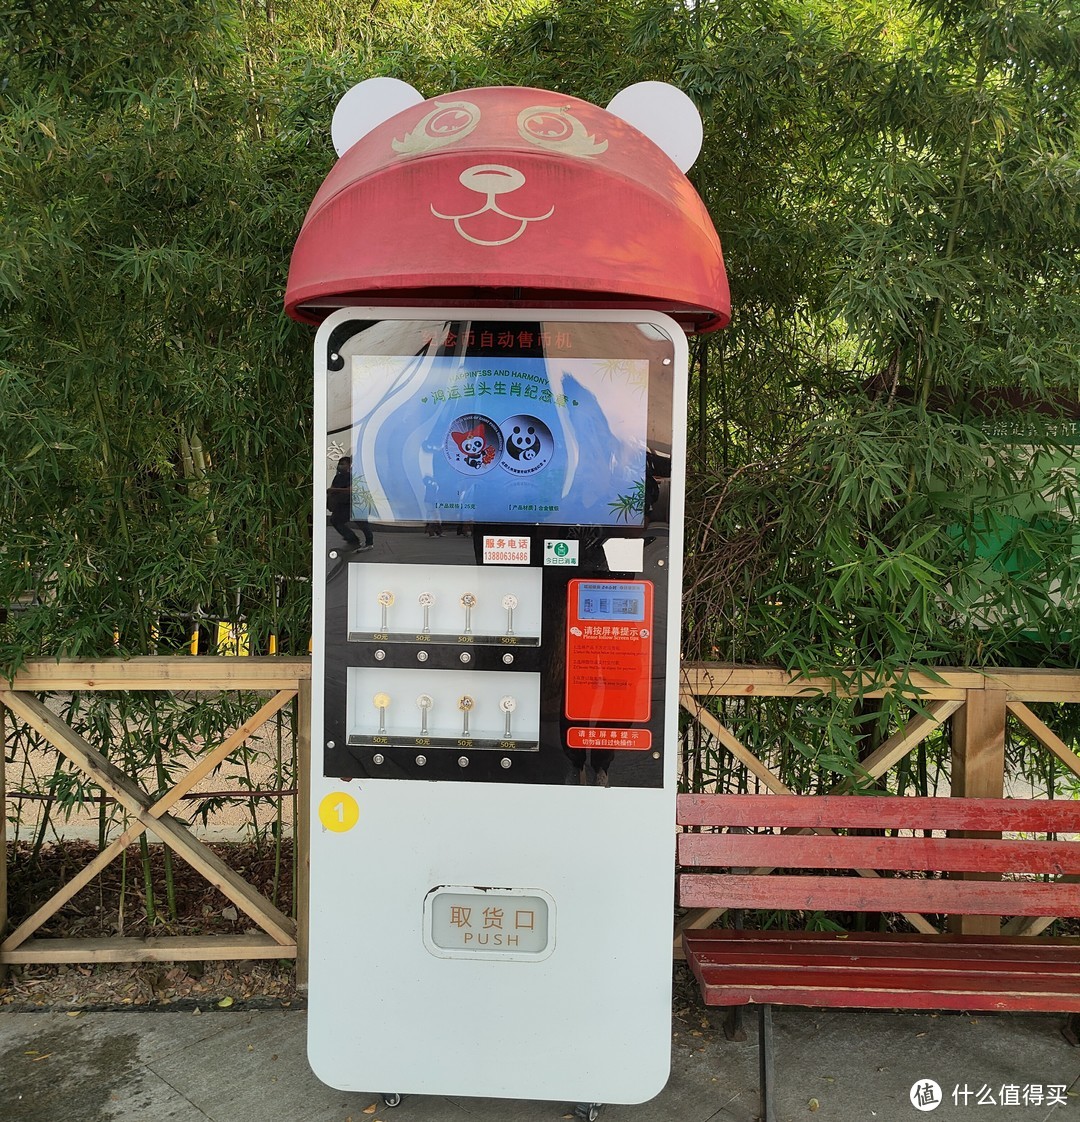 熊猫纪念币自动贩卖机